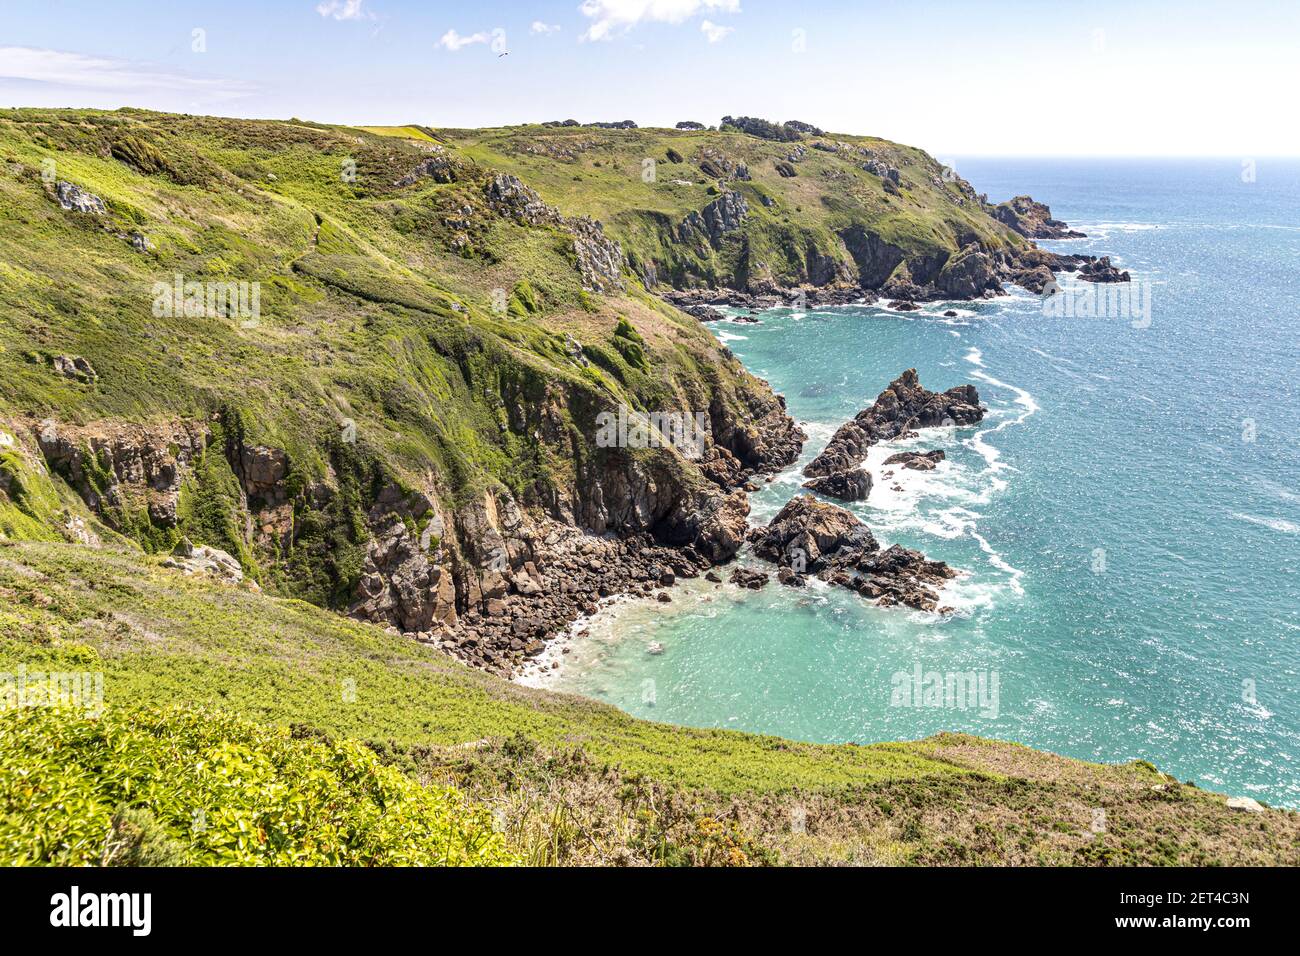 Die wunderschöne zerklüftete Südküste von Guernsey, Channel Islands UK - Blick Richtung Icart Point aus der Nähe von Petit bot Stockfoto